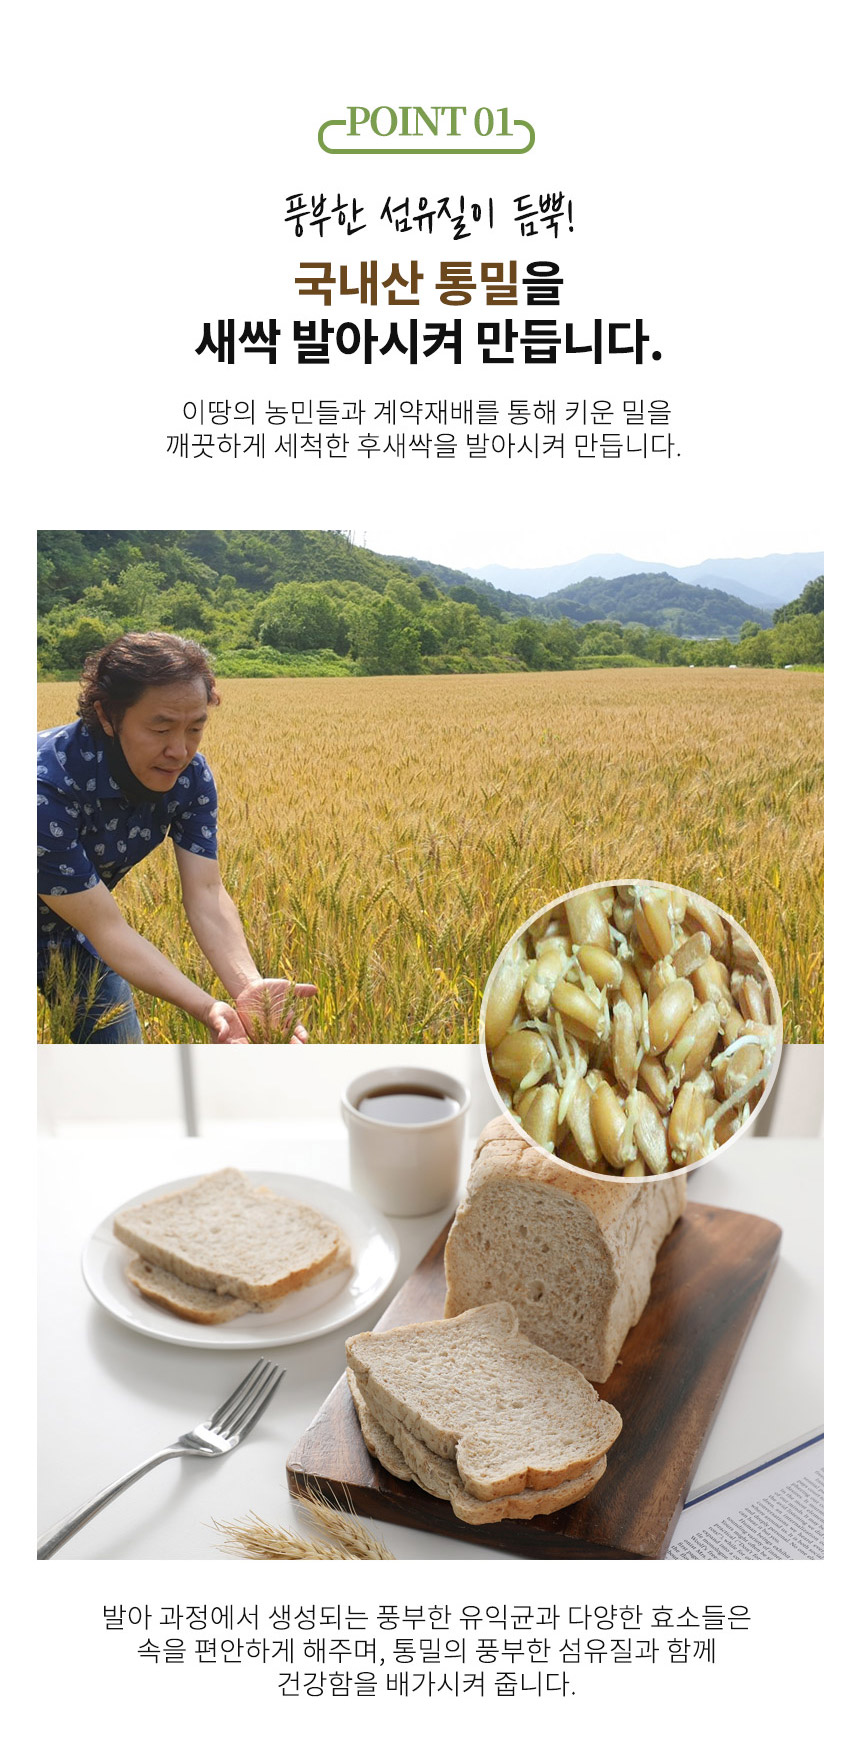 참농부들_새싹발아통밀빵(수정)_04.jpg